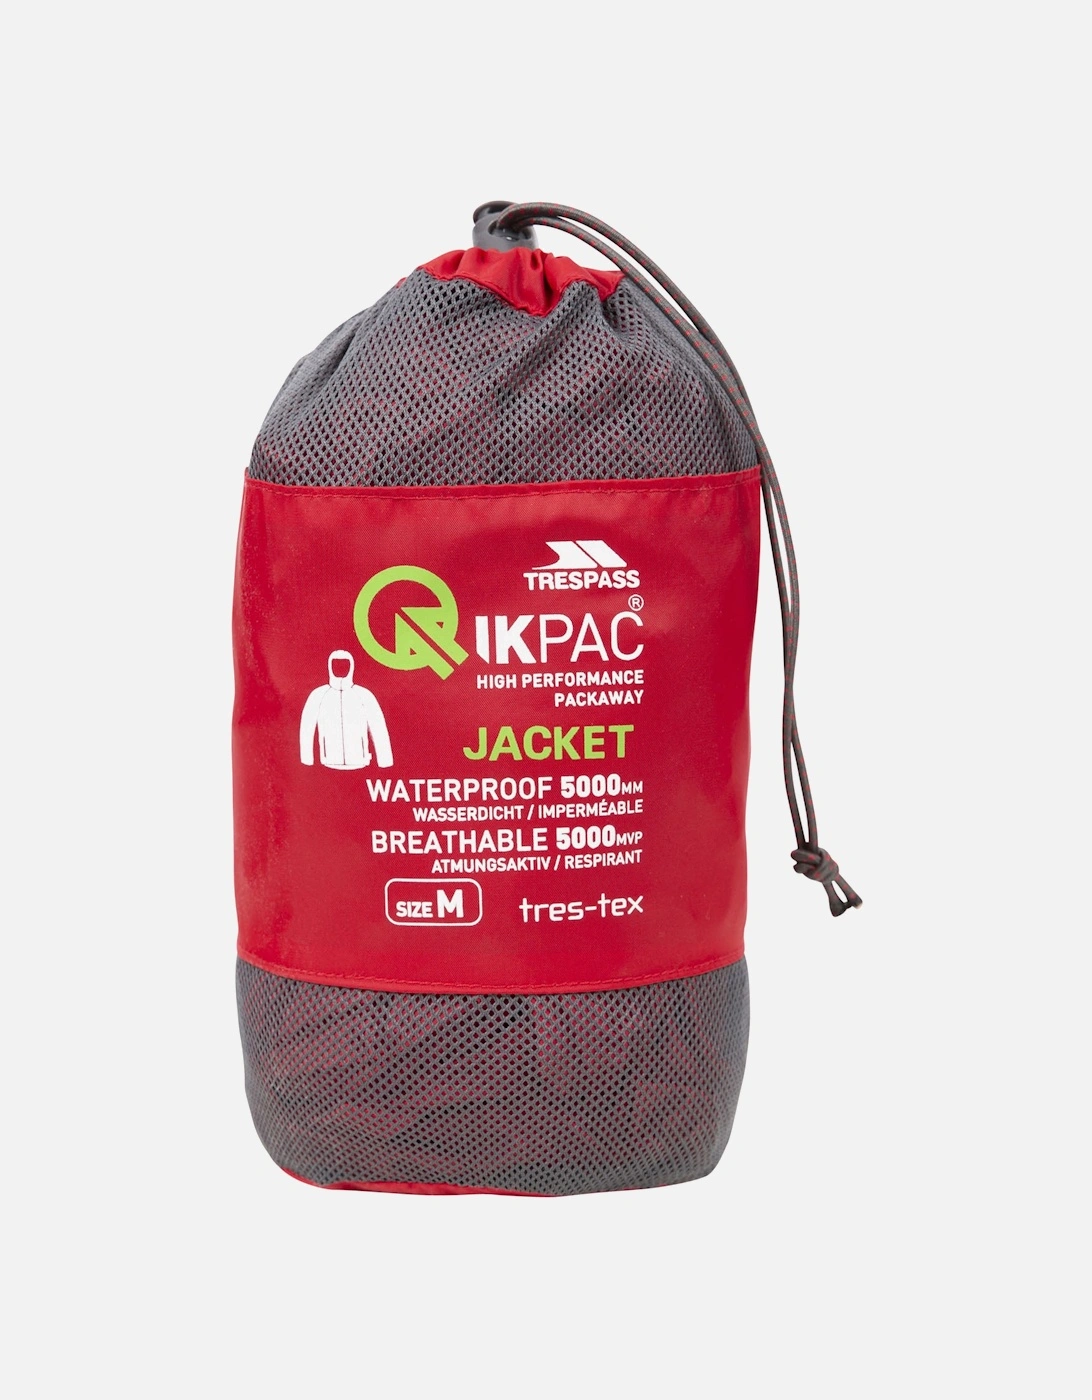 Qikpac Waterproof Packaway Jacket